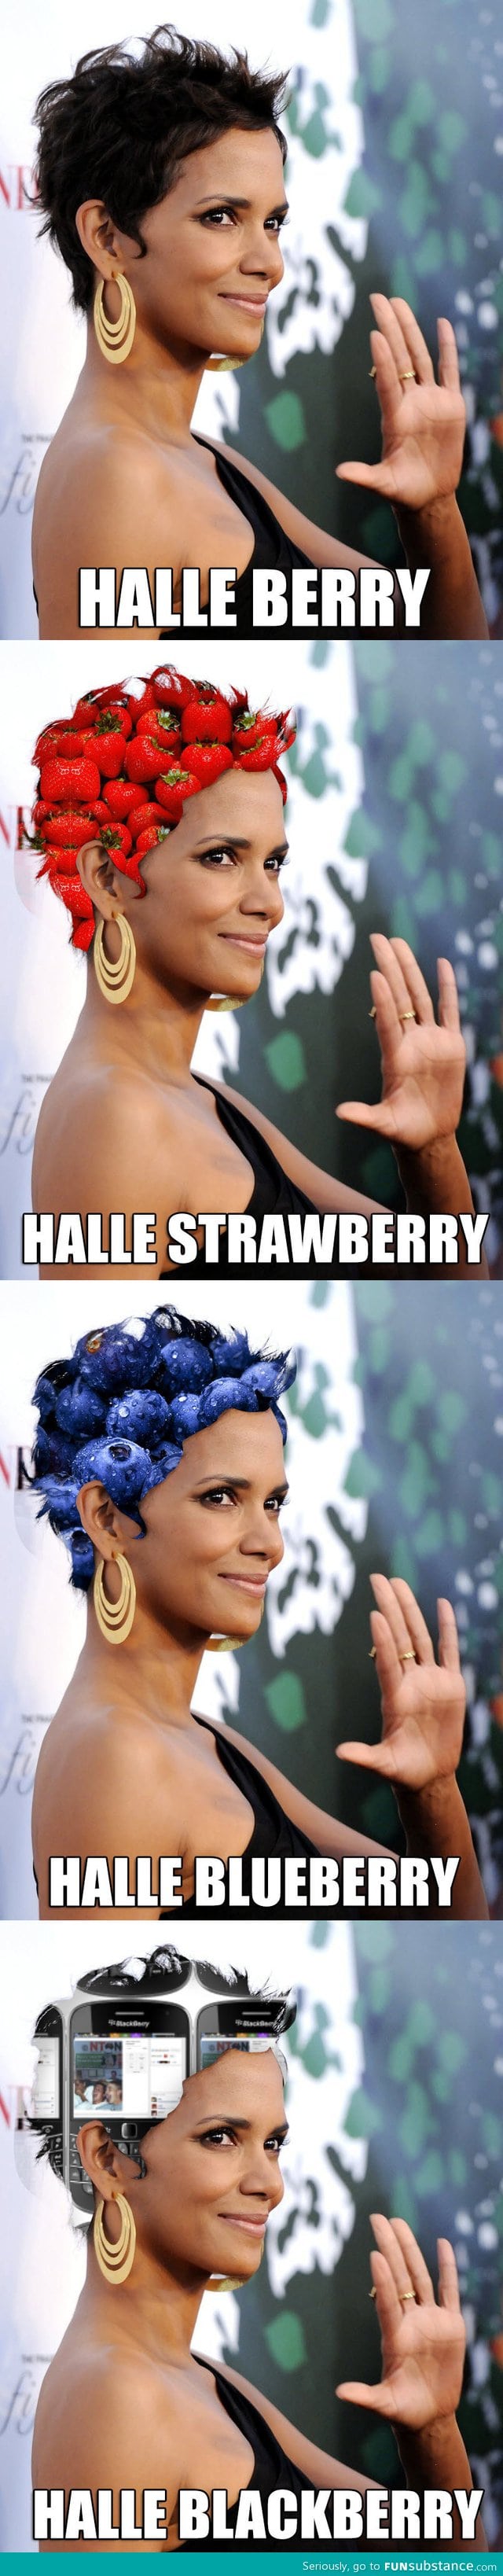 Halle berry